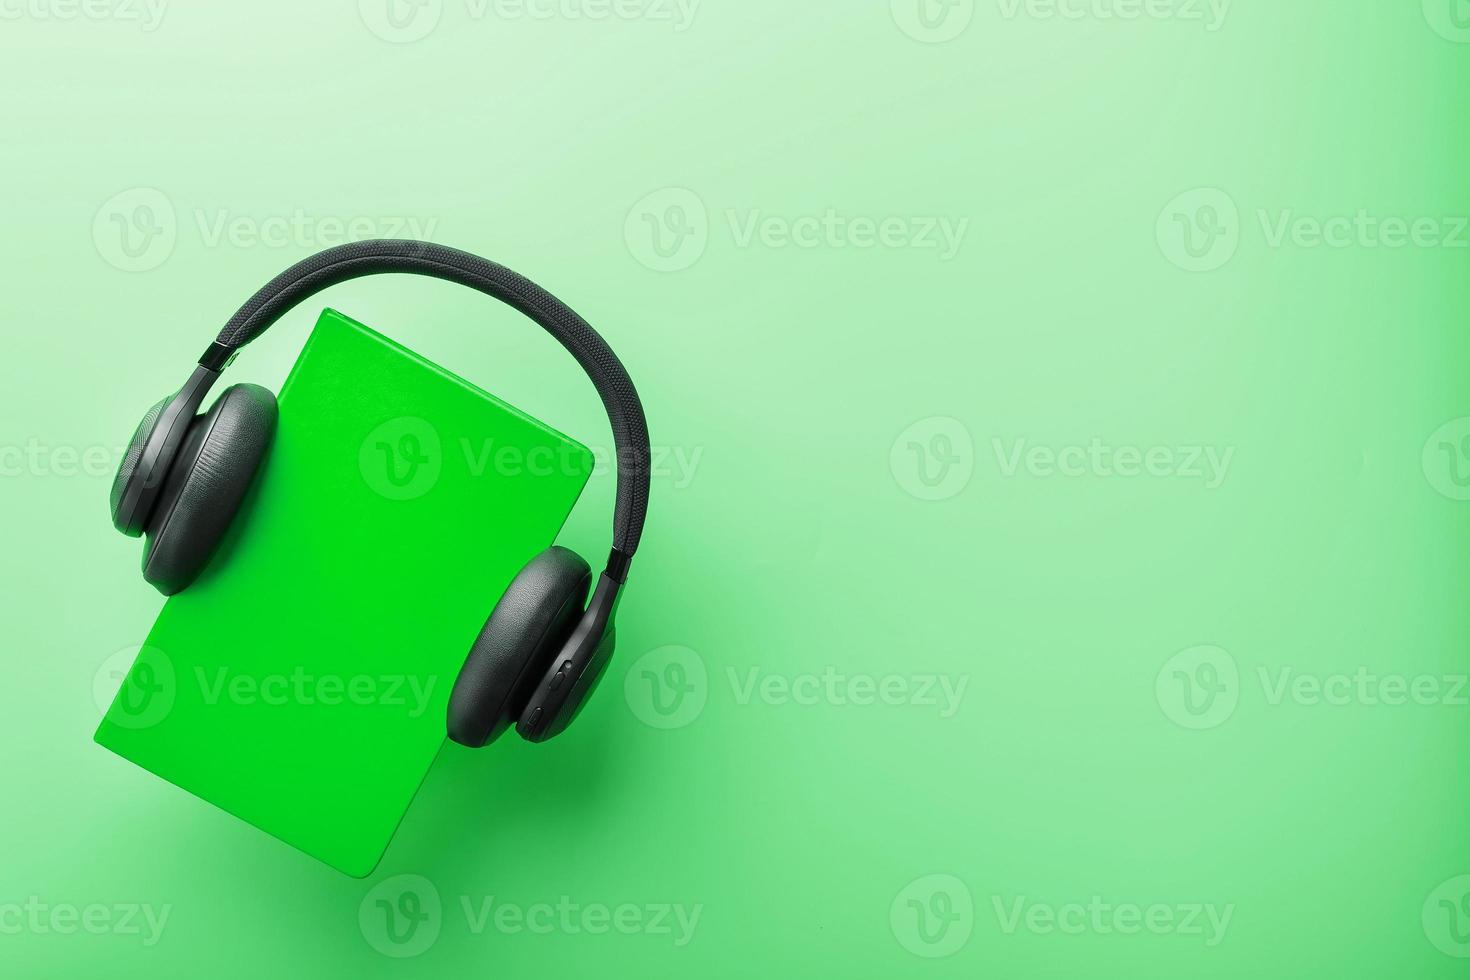 Kopfhörer werden auf einem Buch in einem grünen Hardcover auf grünem Hintergrund getragen, Ansicht von oben. foto